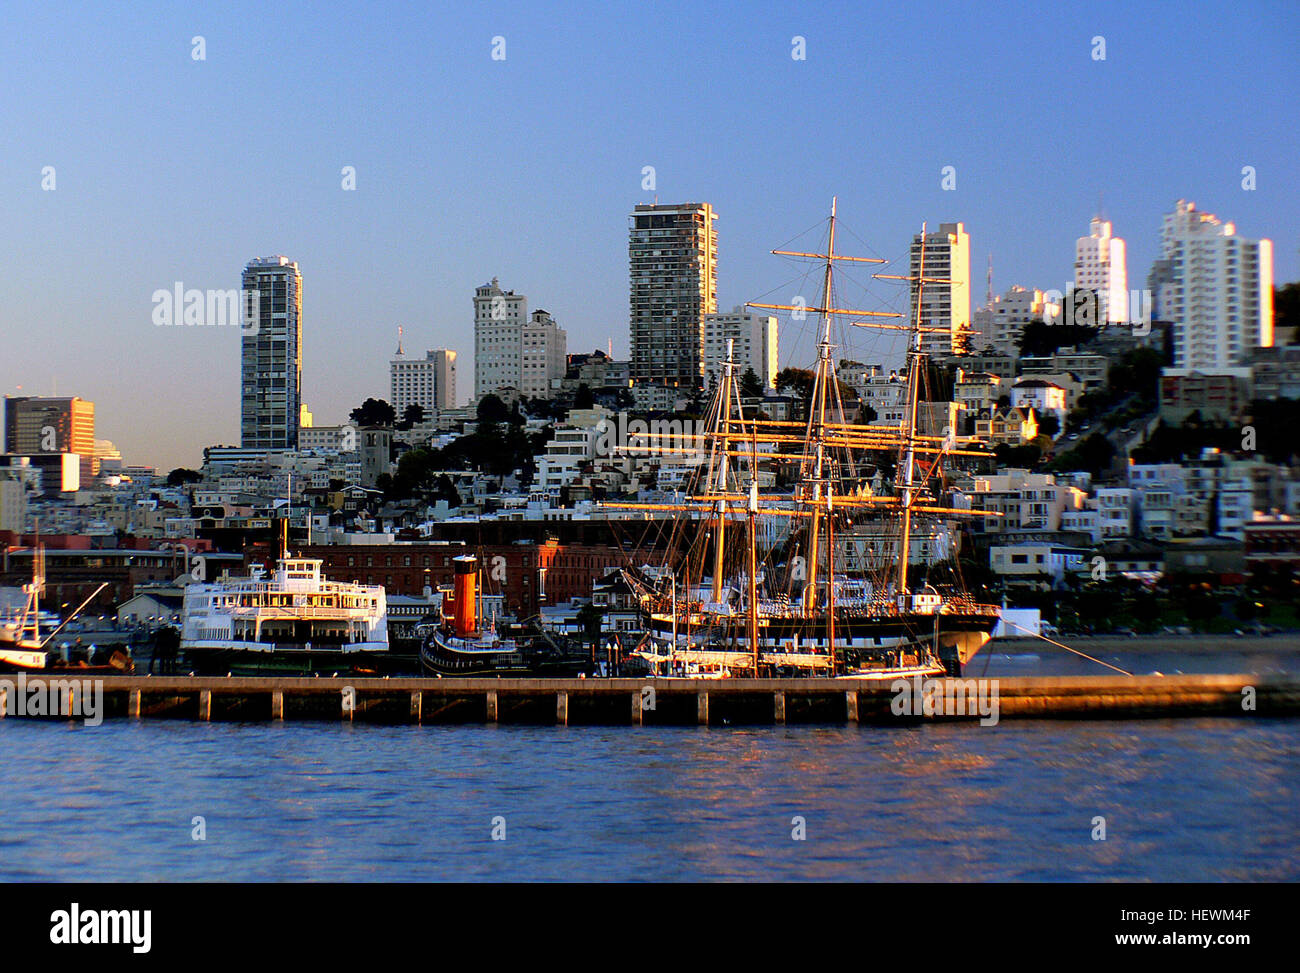 Der San Francisco Bay Area, allgemein bekannt als der Bay Area ist eine besiedelten Region, die die San Francisco und San Pablo Flussmündungen in Nordkalifornien, USA umgibt. Die Region umfasst die großen Städte und Metropolen San Francisco, Oakland und San Jose, zusammen mit kleineren städtischen und ländlichen Gebieten. Stockfoto